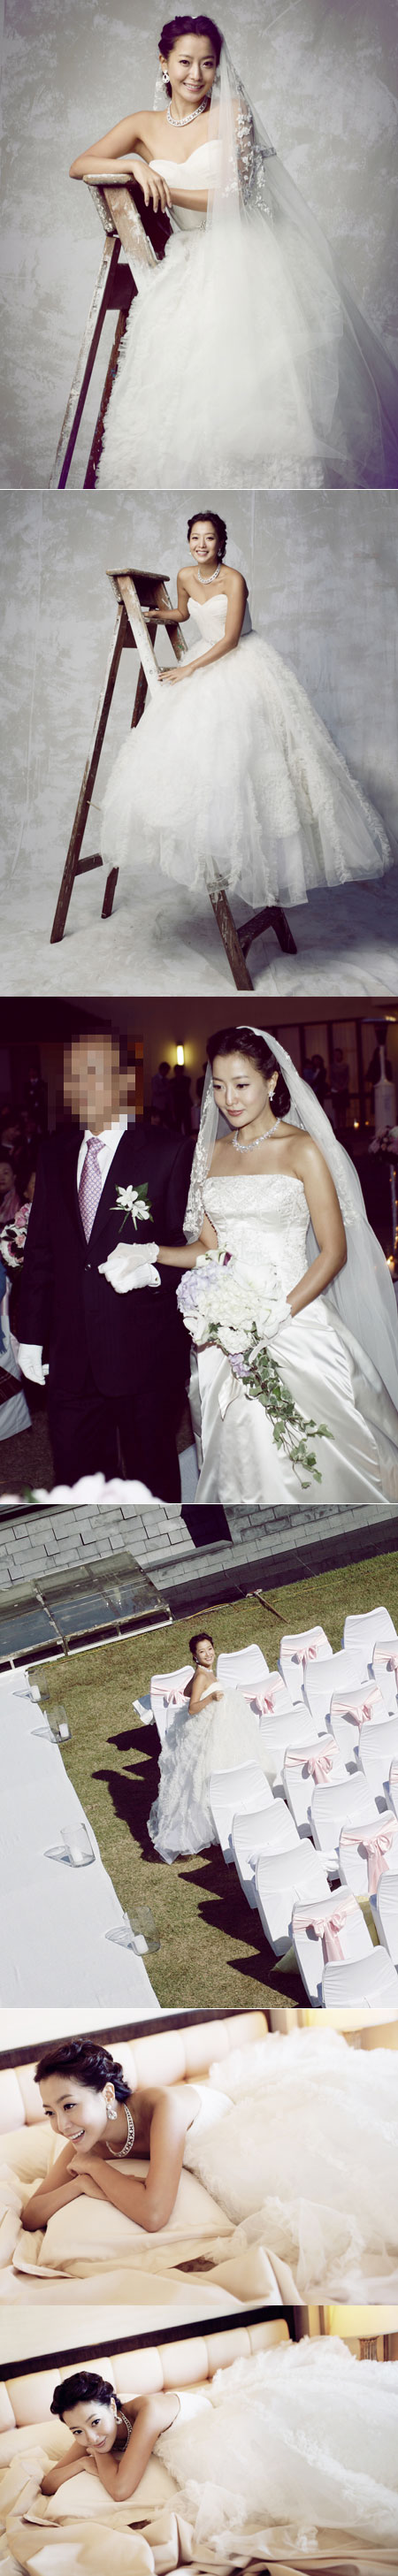 مع العلم أنها تزوجت حديثا فقط بعض من صور زفافهاكيم هي سان 47352969b8462